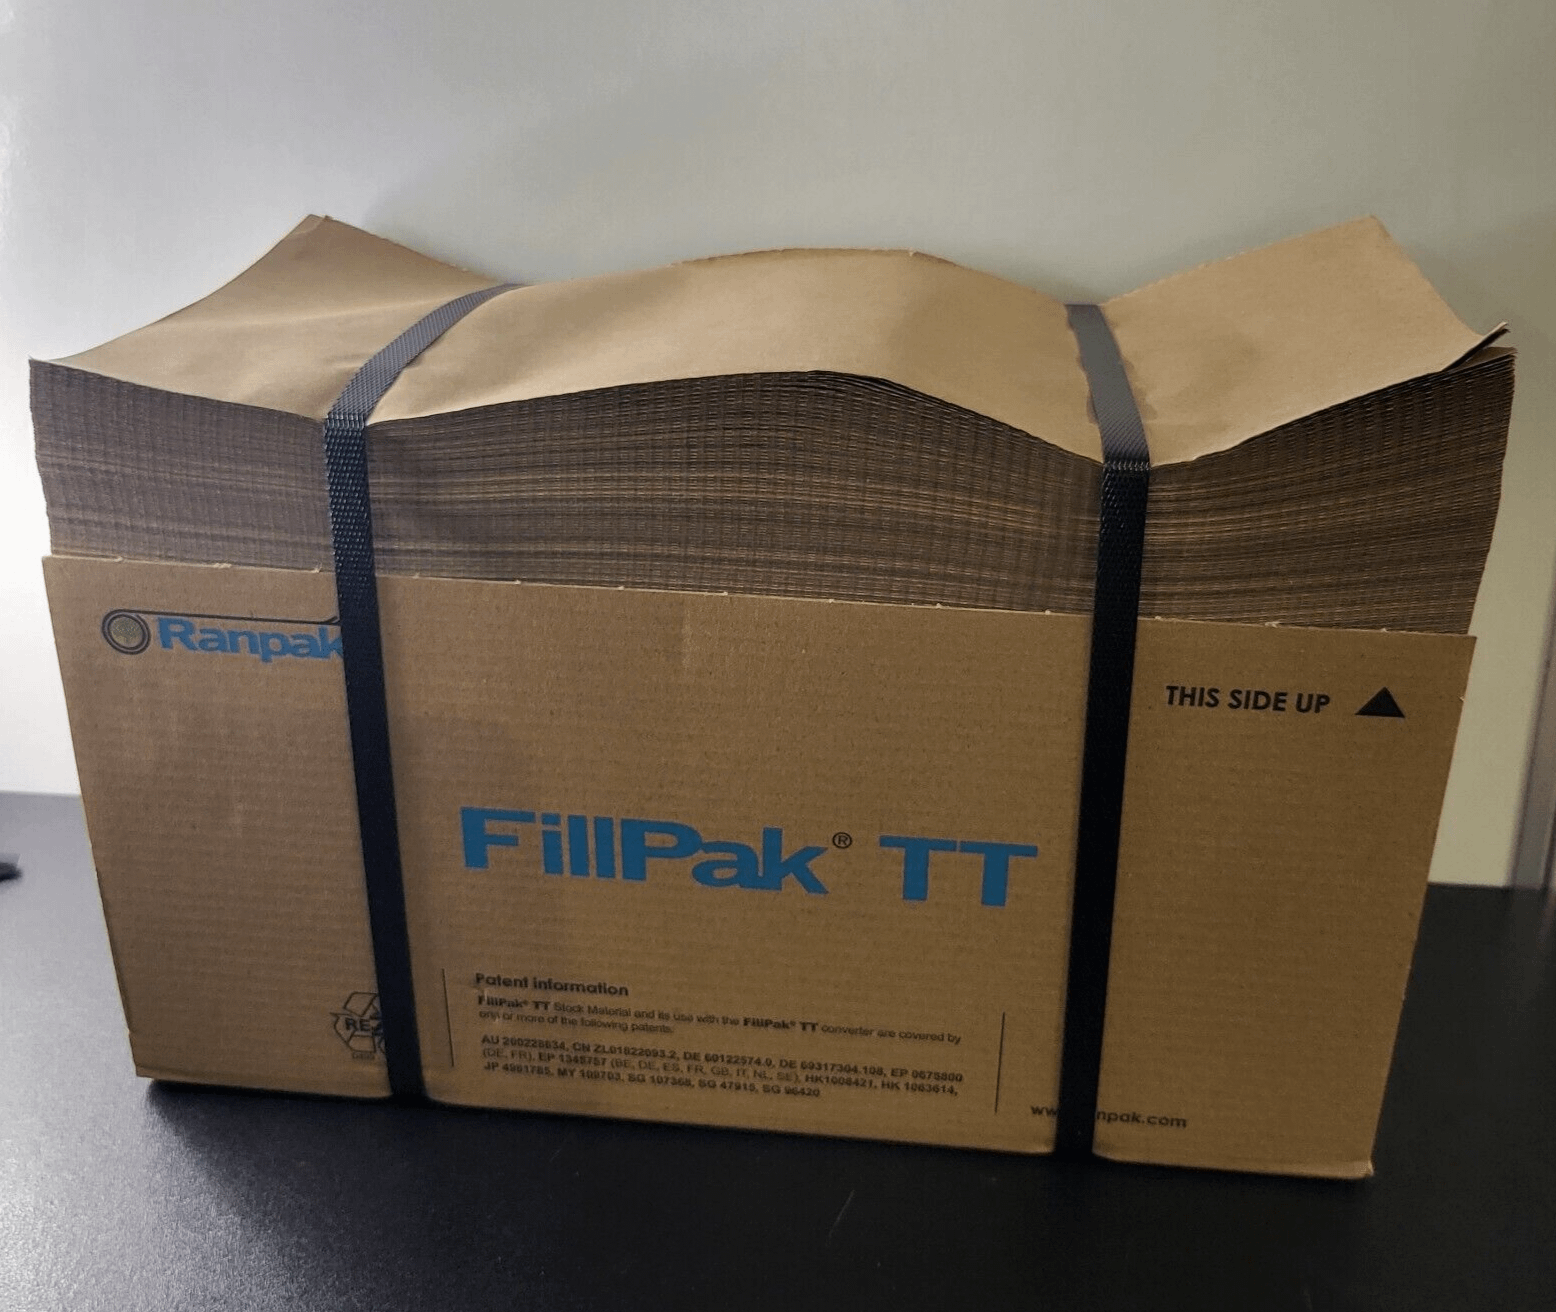 Ranpak FillPak TT Fan Fold Paper Void Fill Packaging Paper